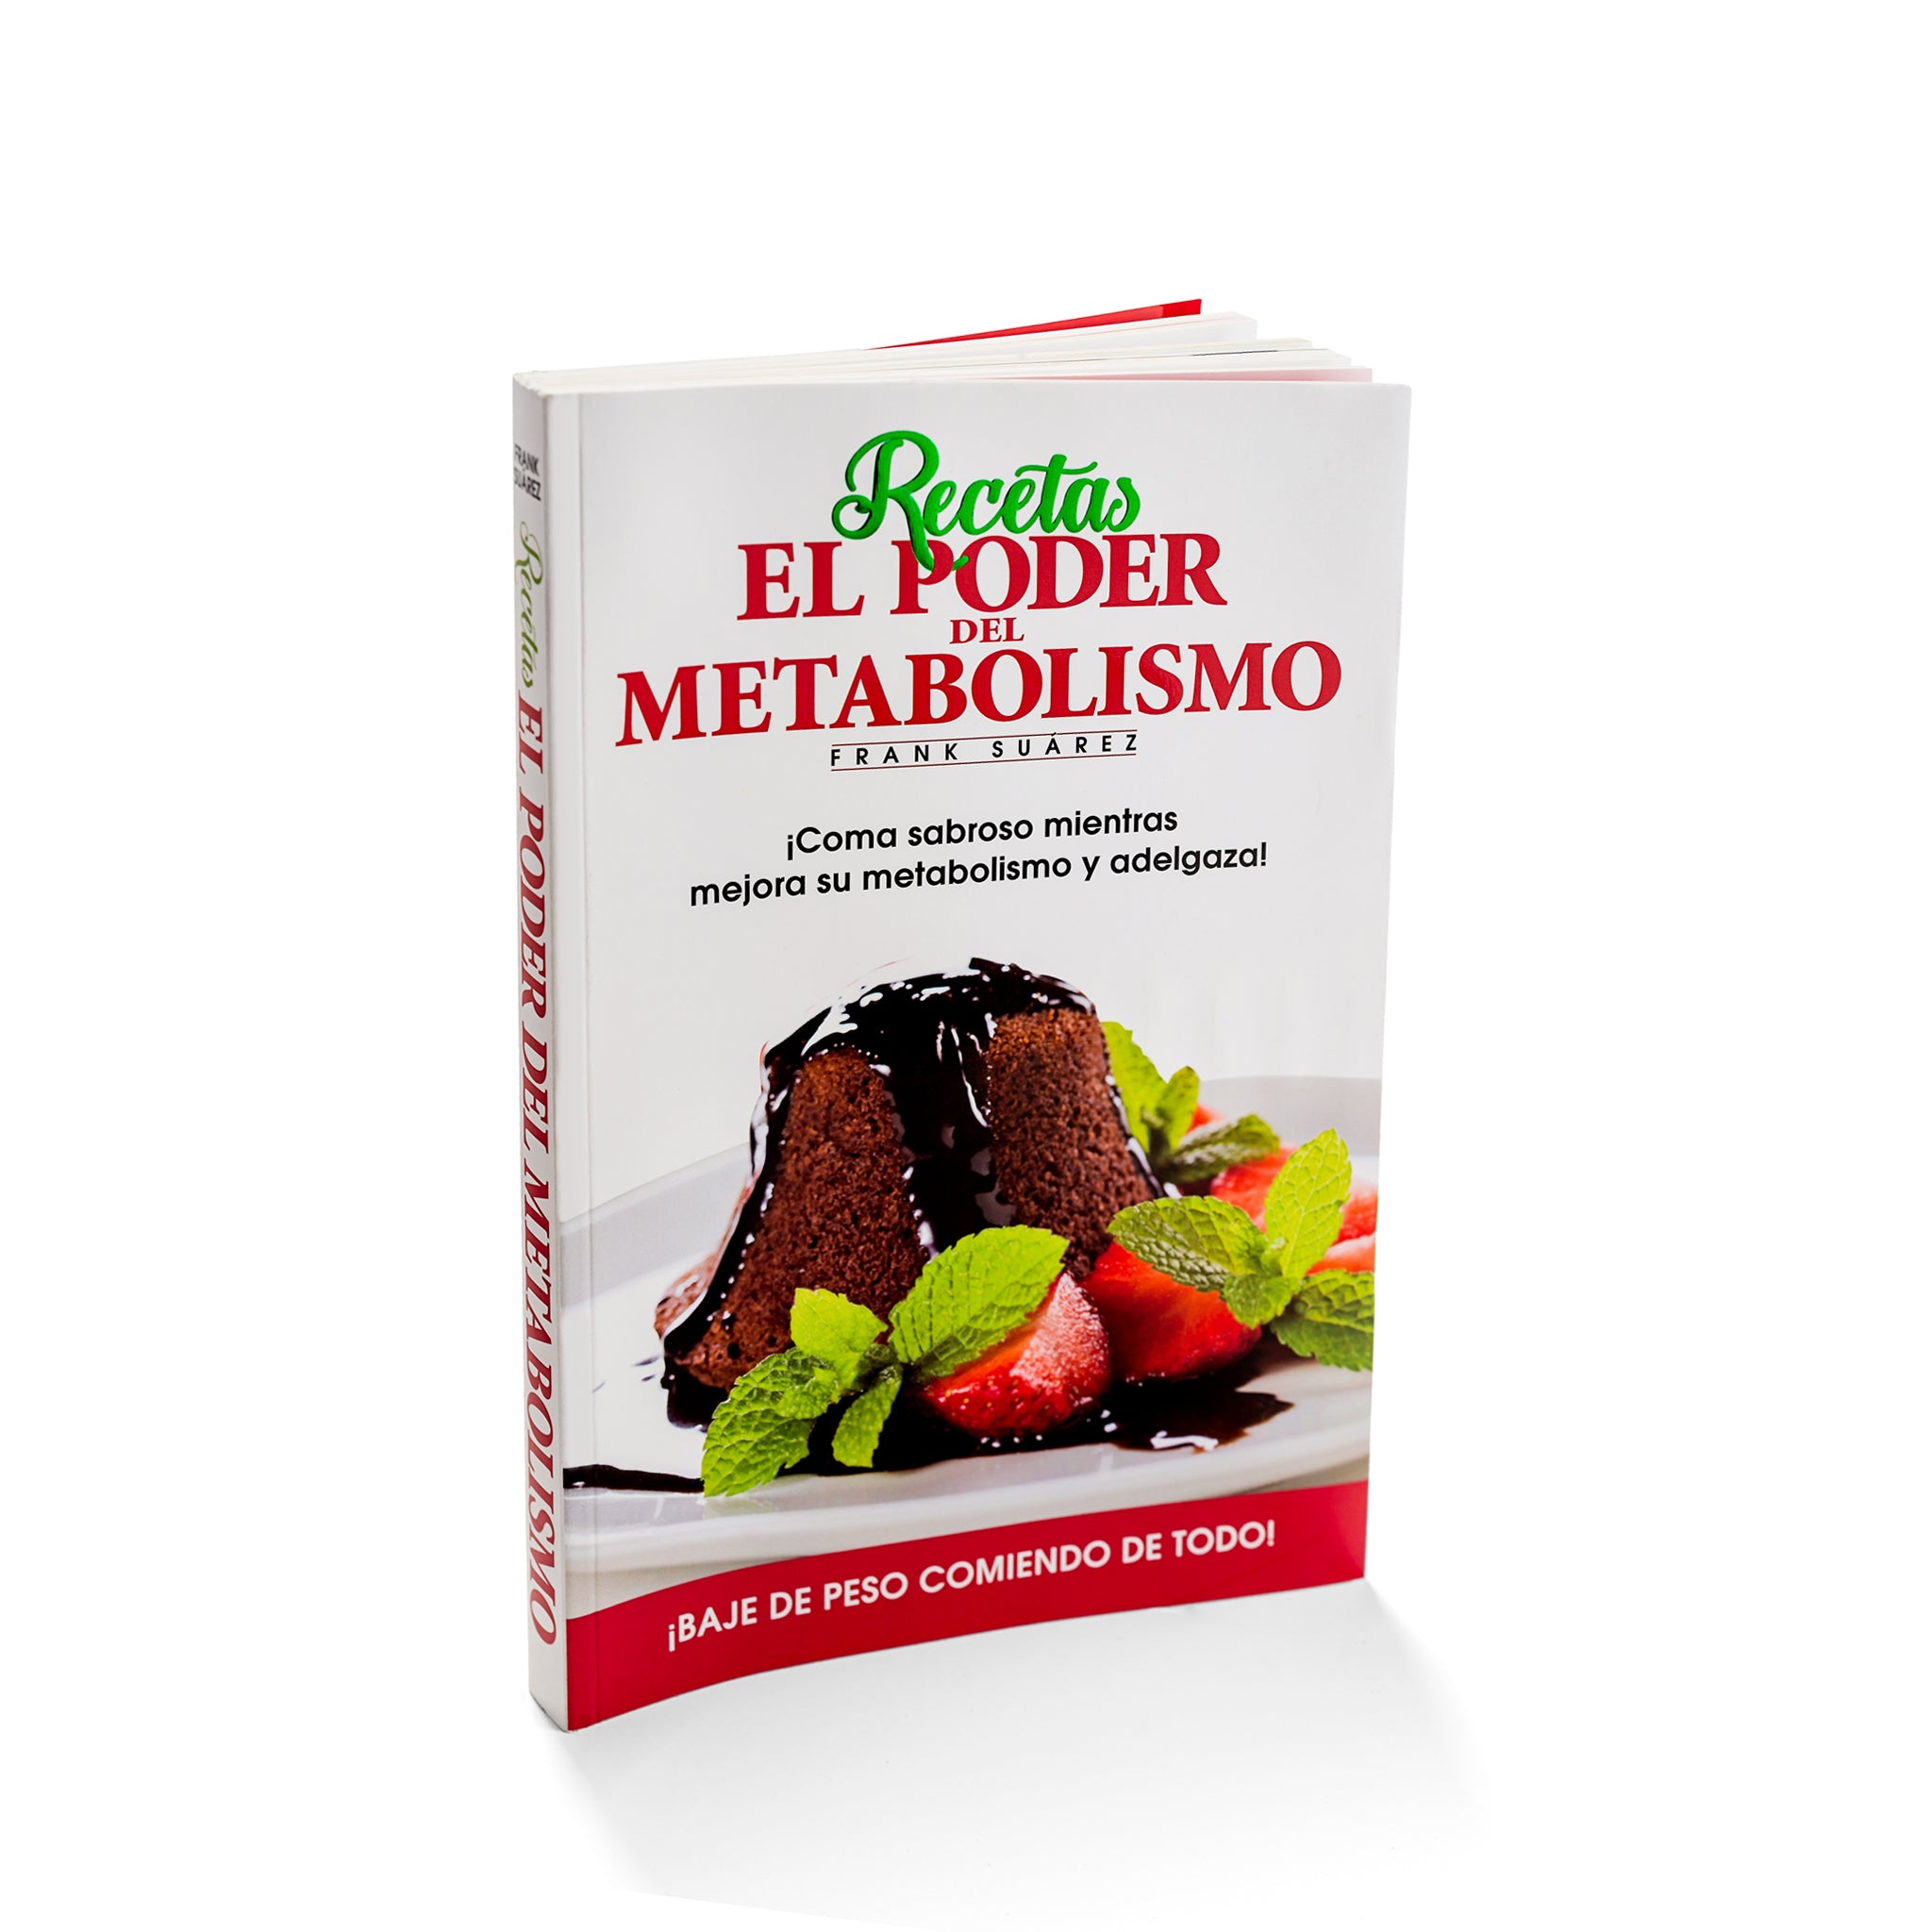 MetabolismoVIP – ACCESO DIGITAL A LOS LIBROS DE FRANK SUAREZ